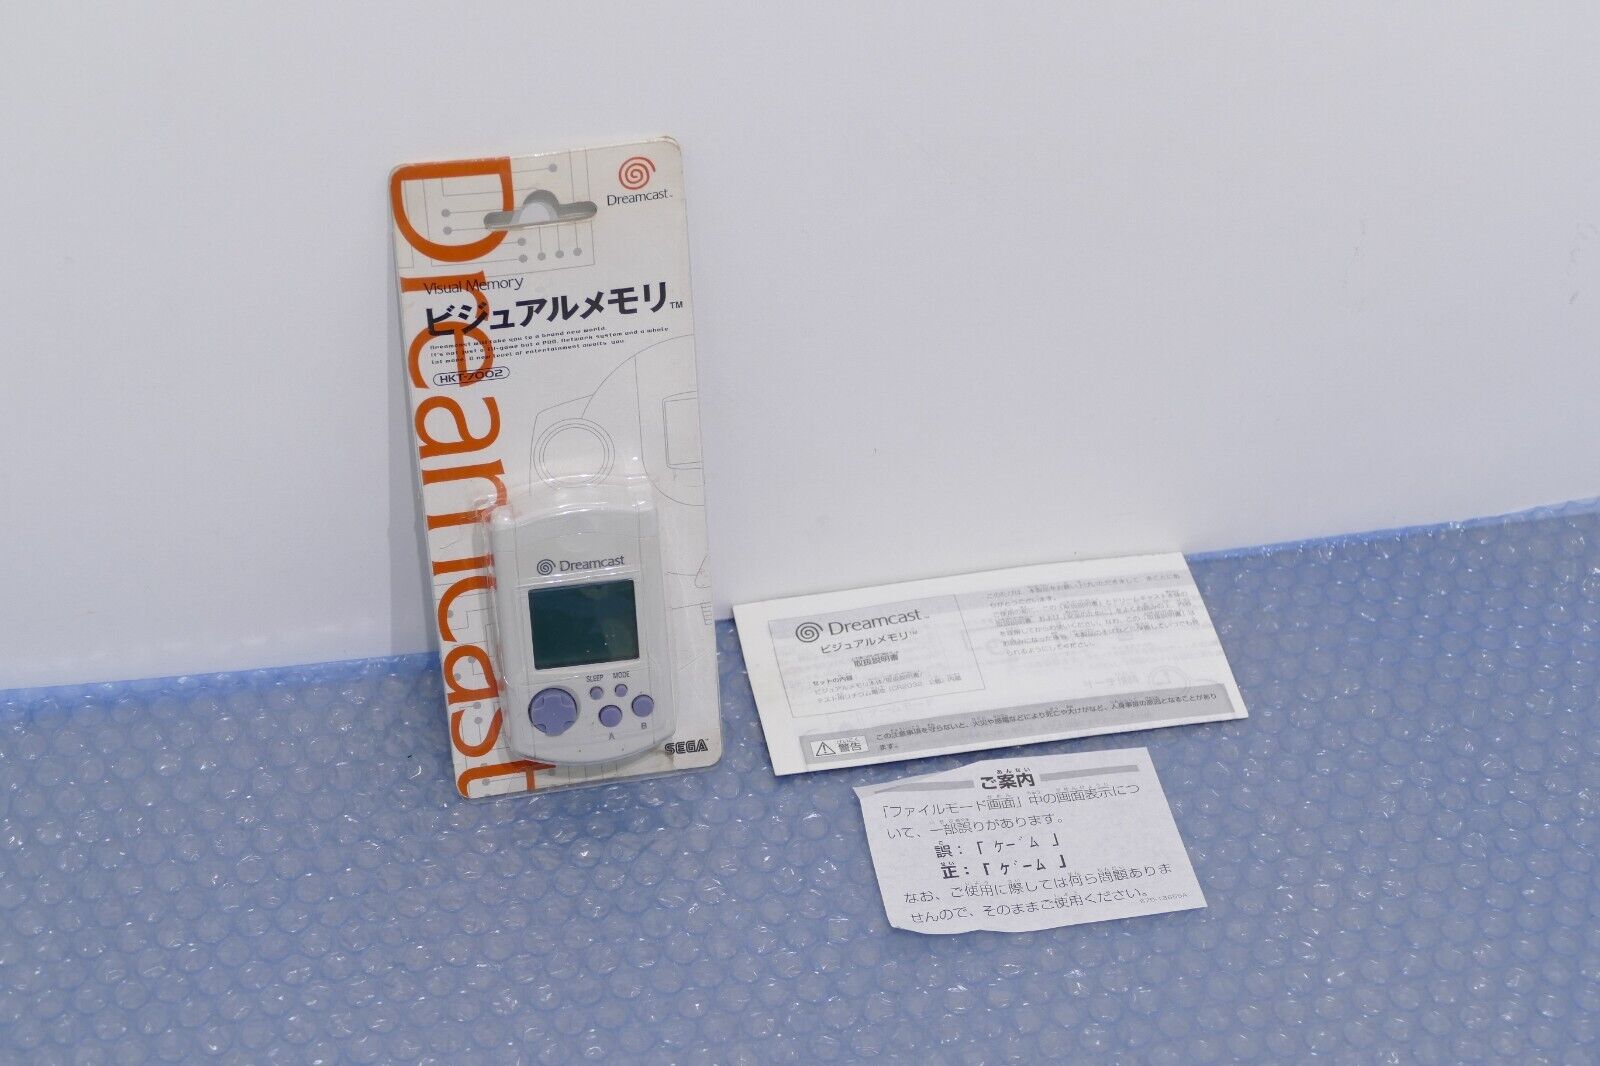 VMU Sega Deamcast en boite / boxed - Official HKT-7002 Memory card